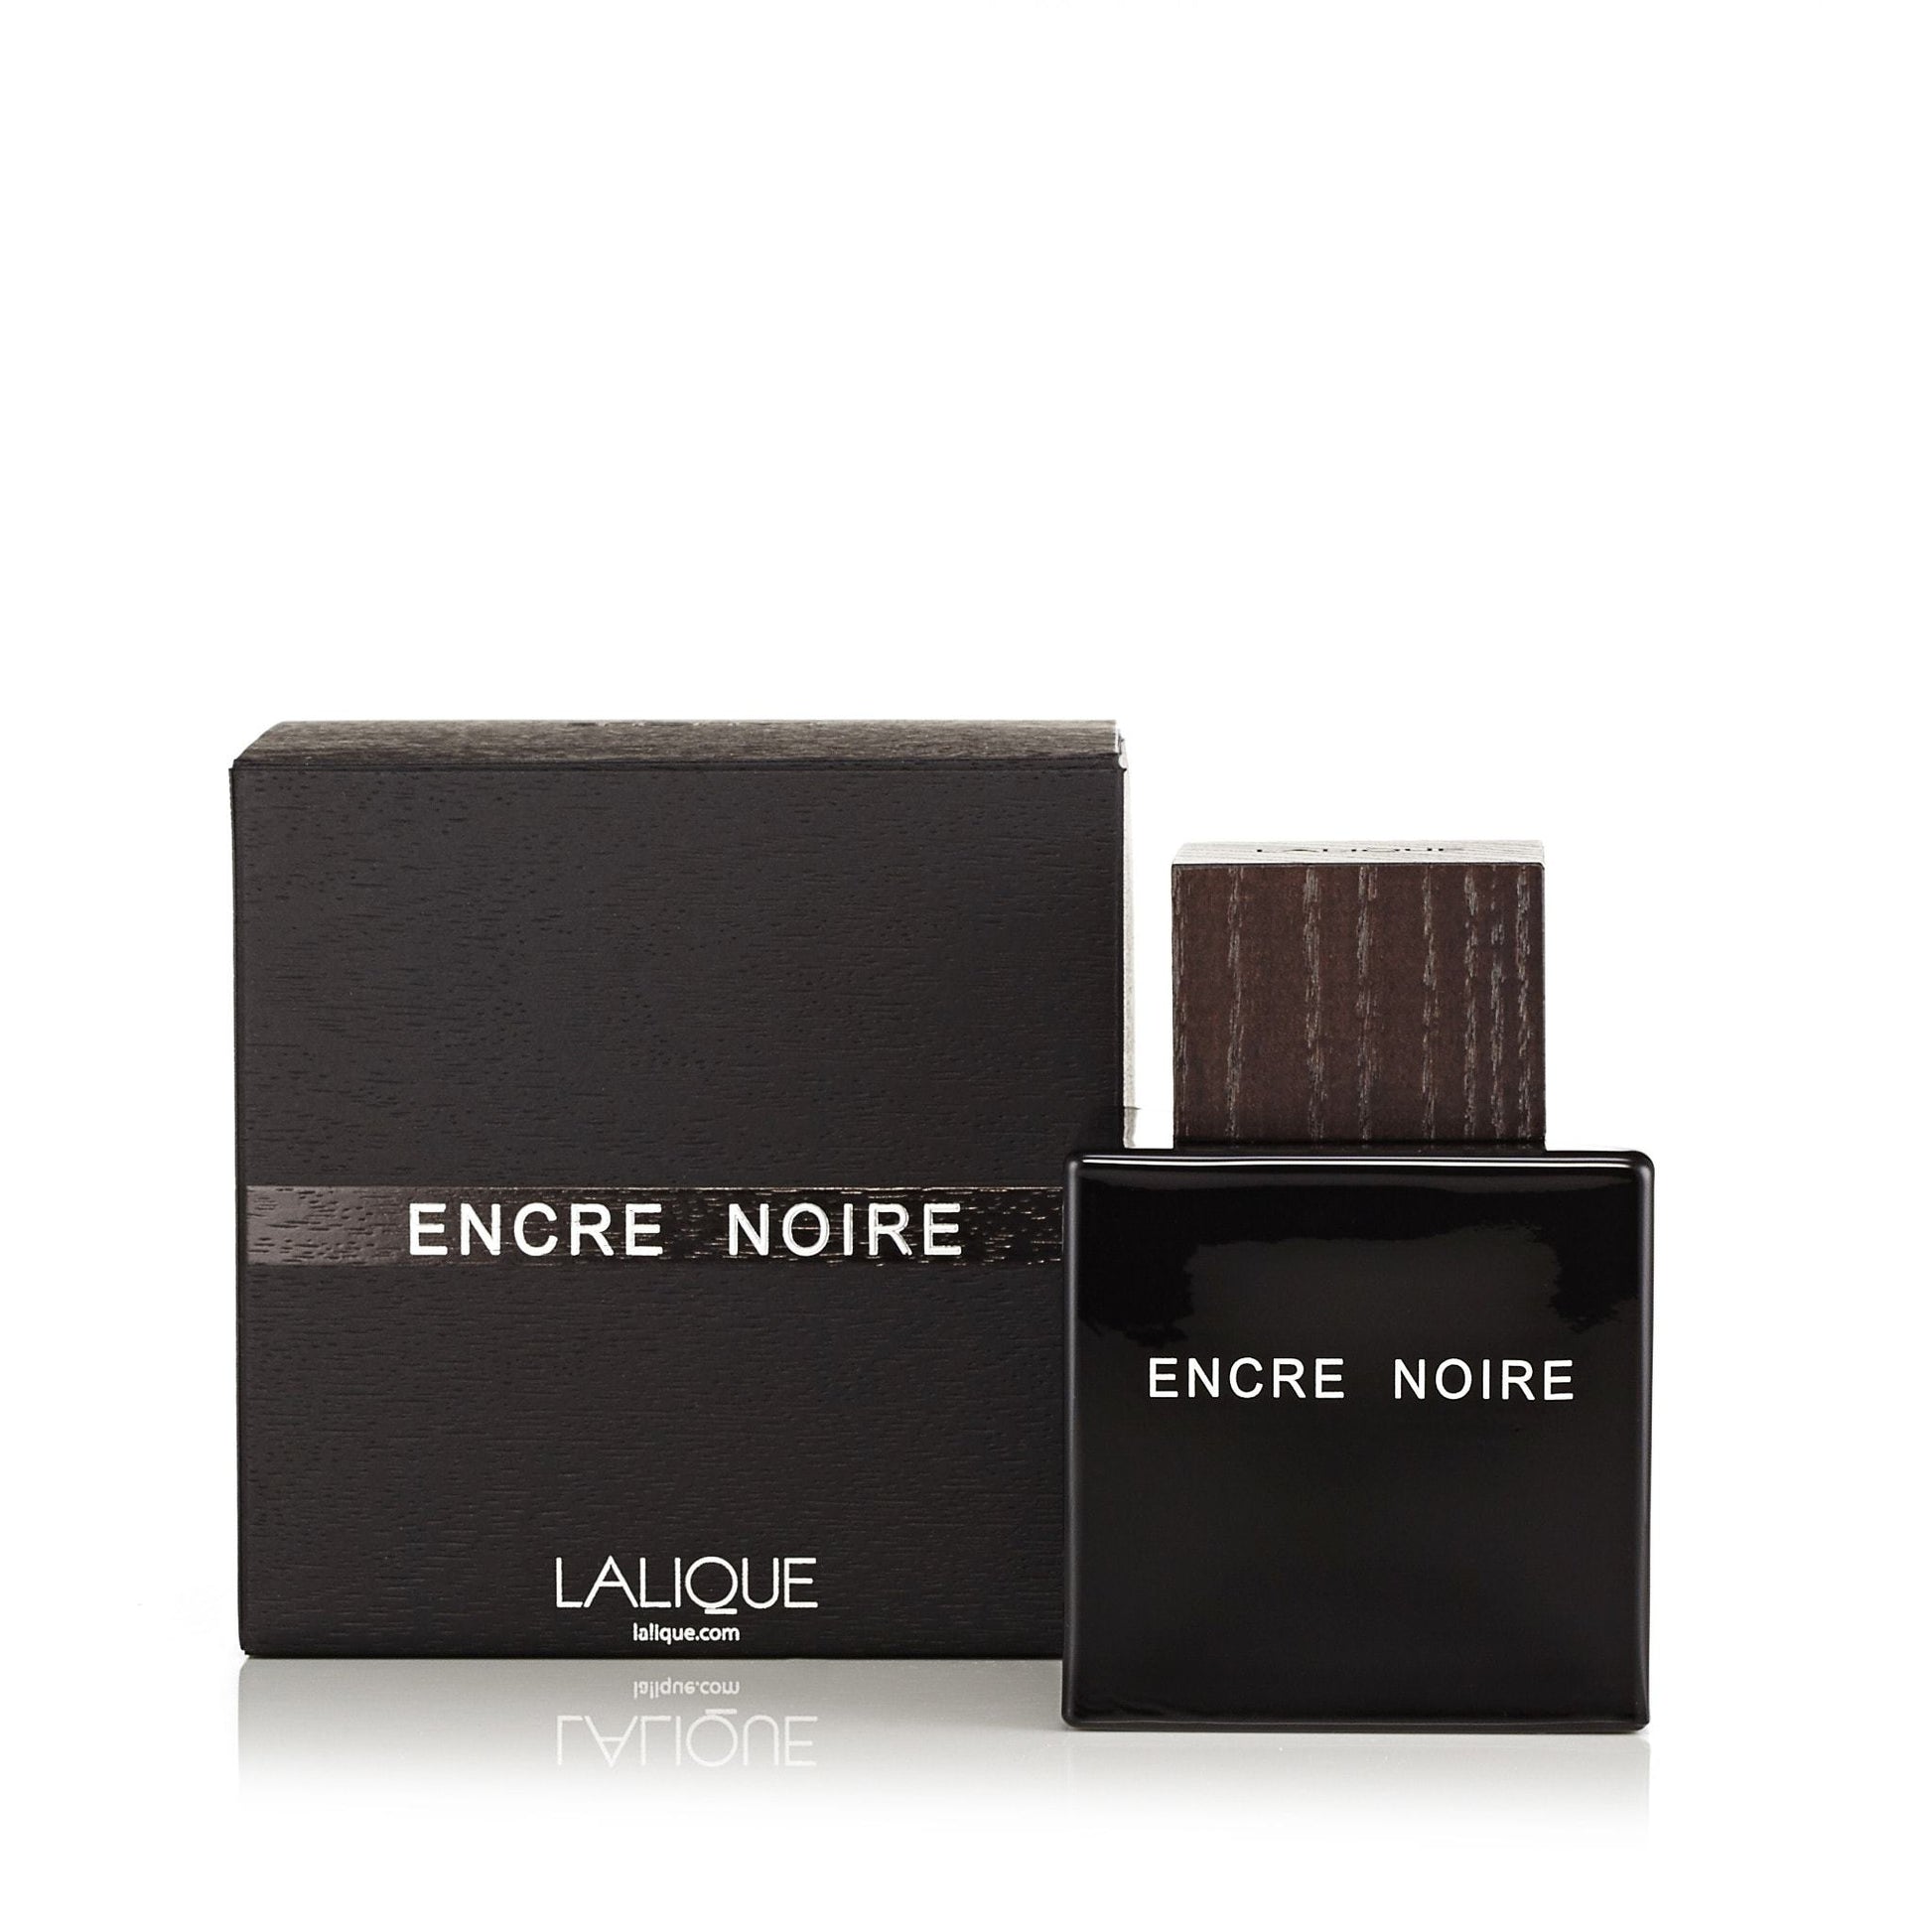 Encre Noire Eau de Toilette Spray for Men by Lalique, Product image 2